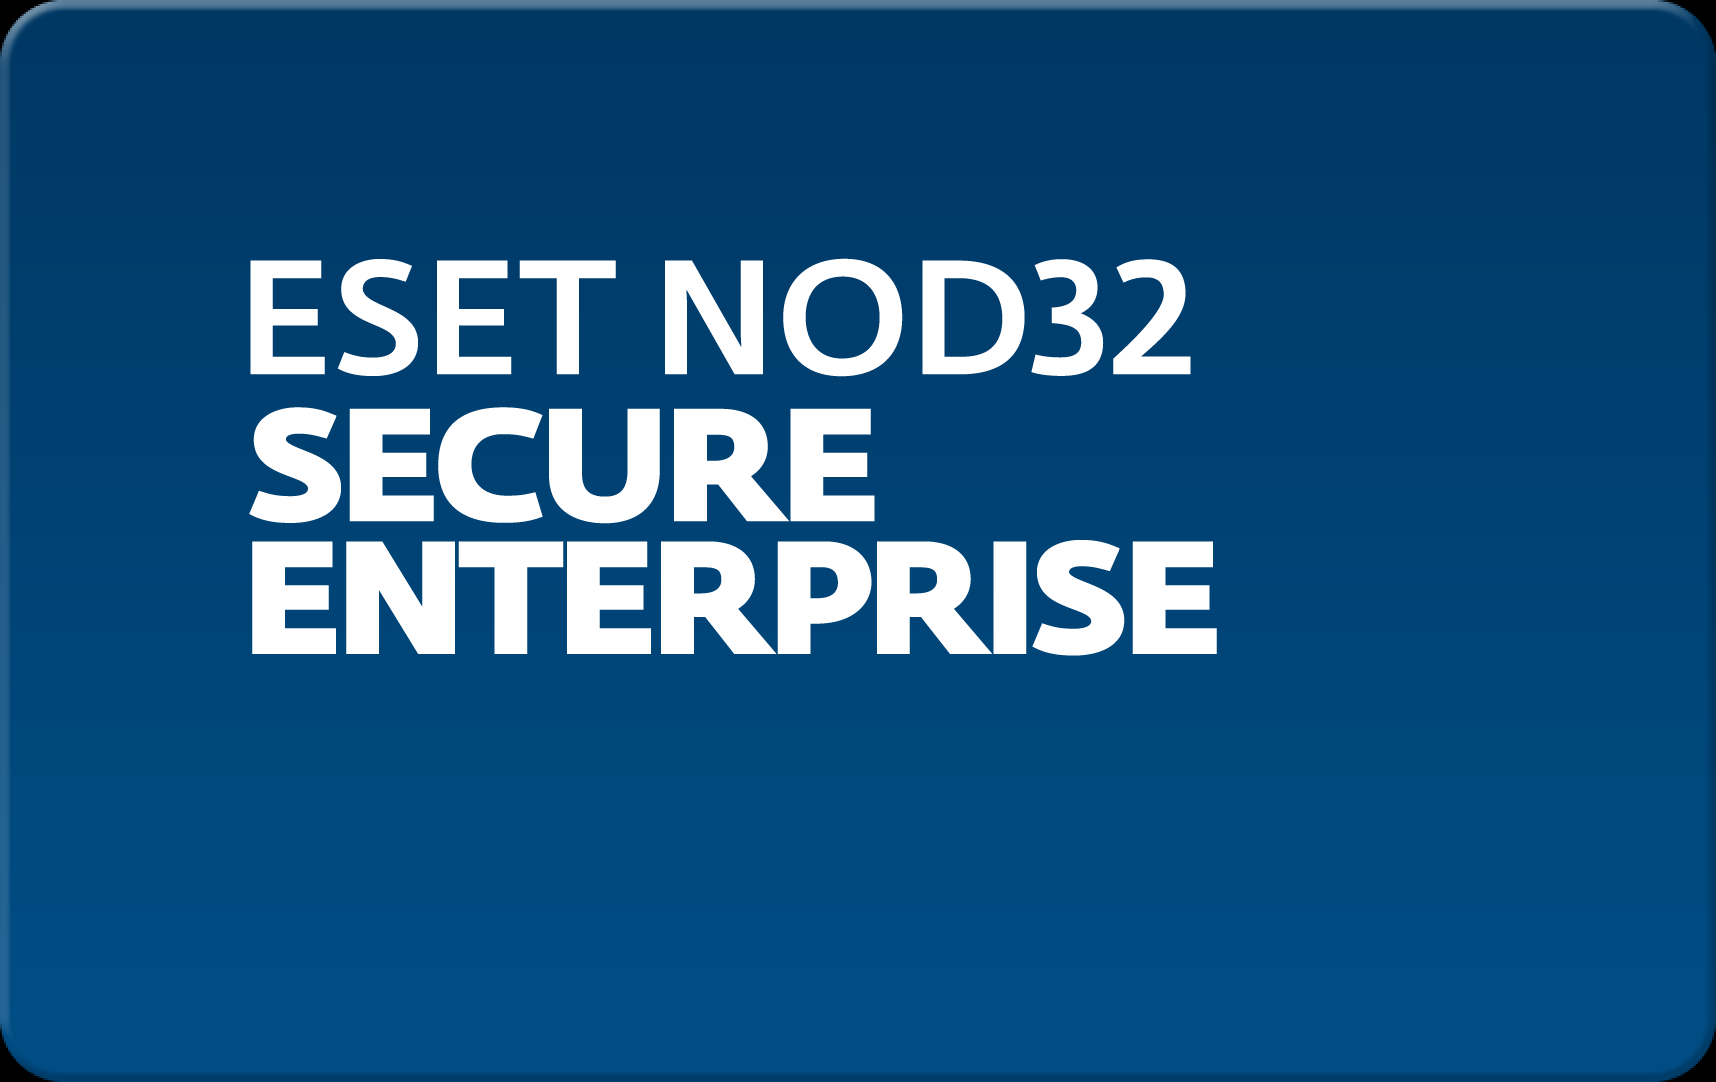        Eset NOD32 Secure Enterprise  168 